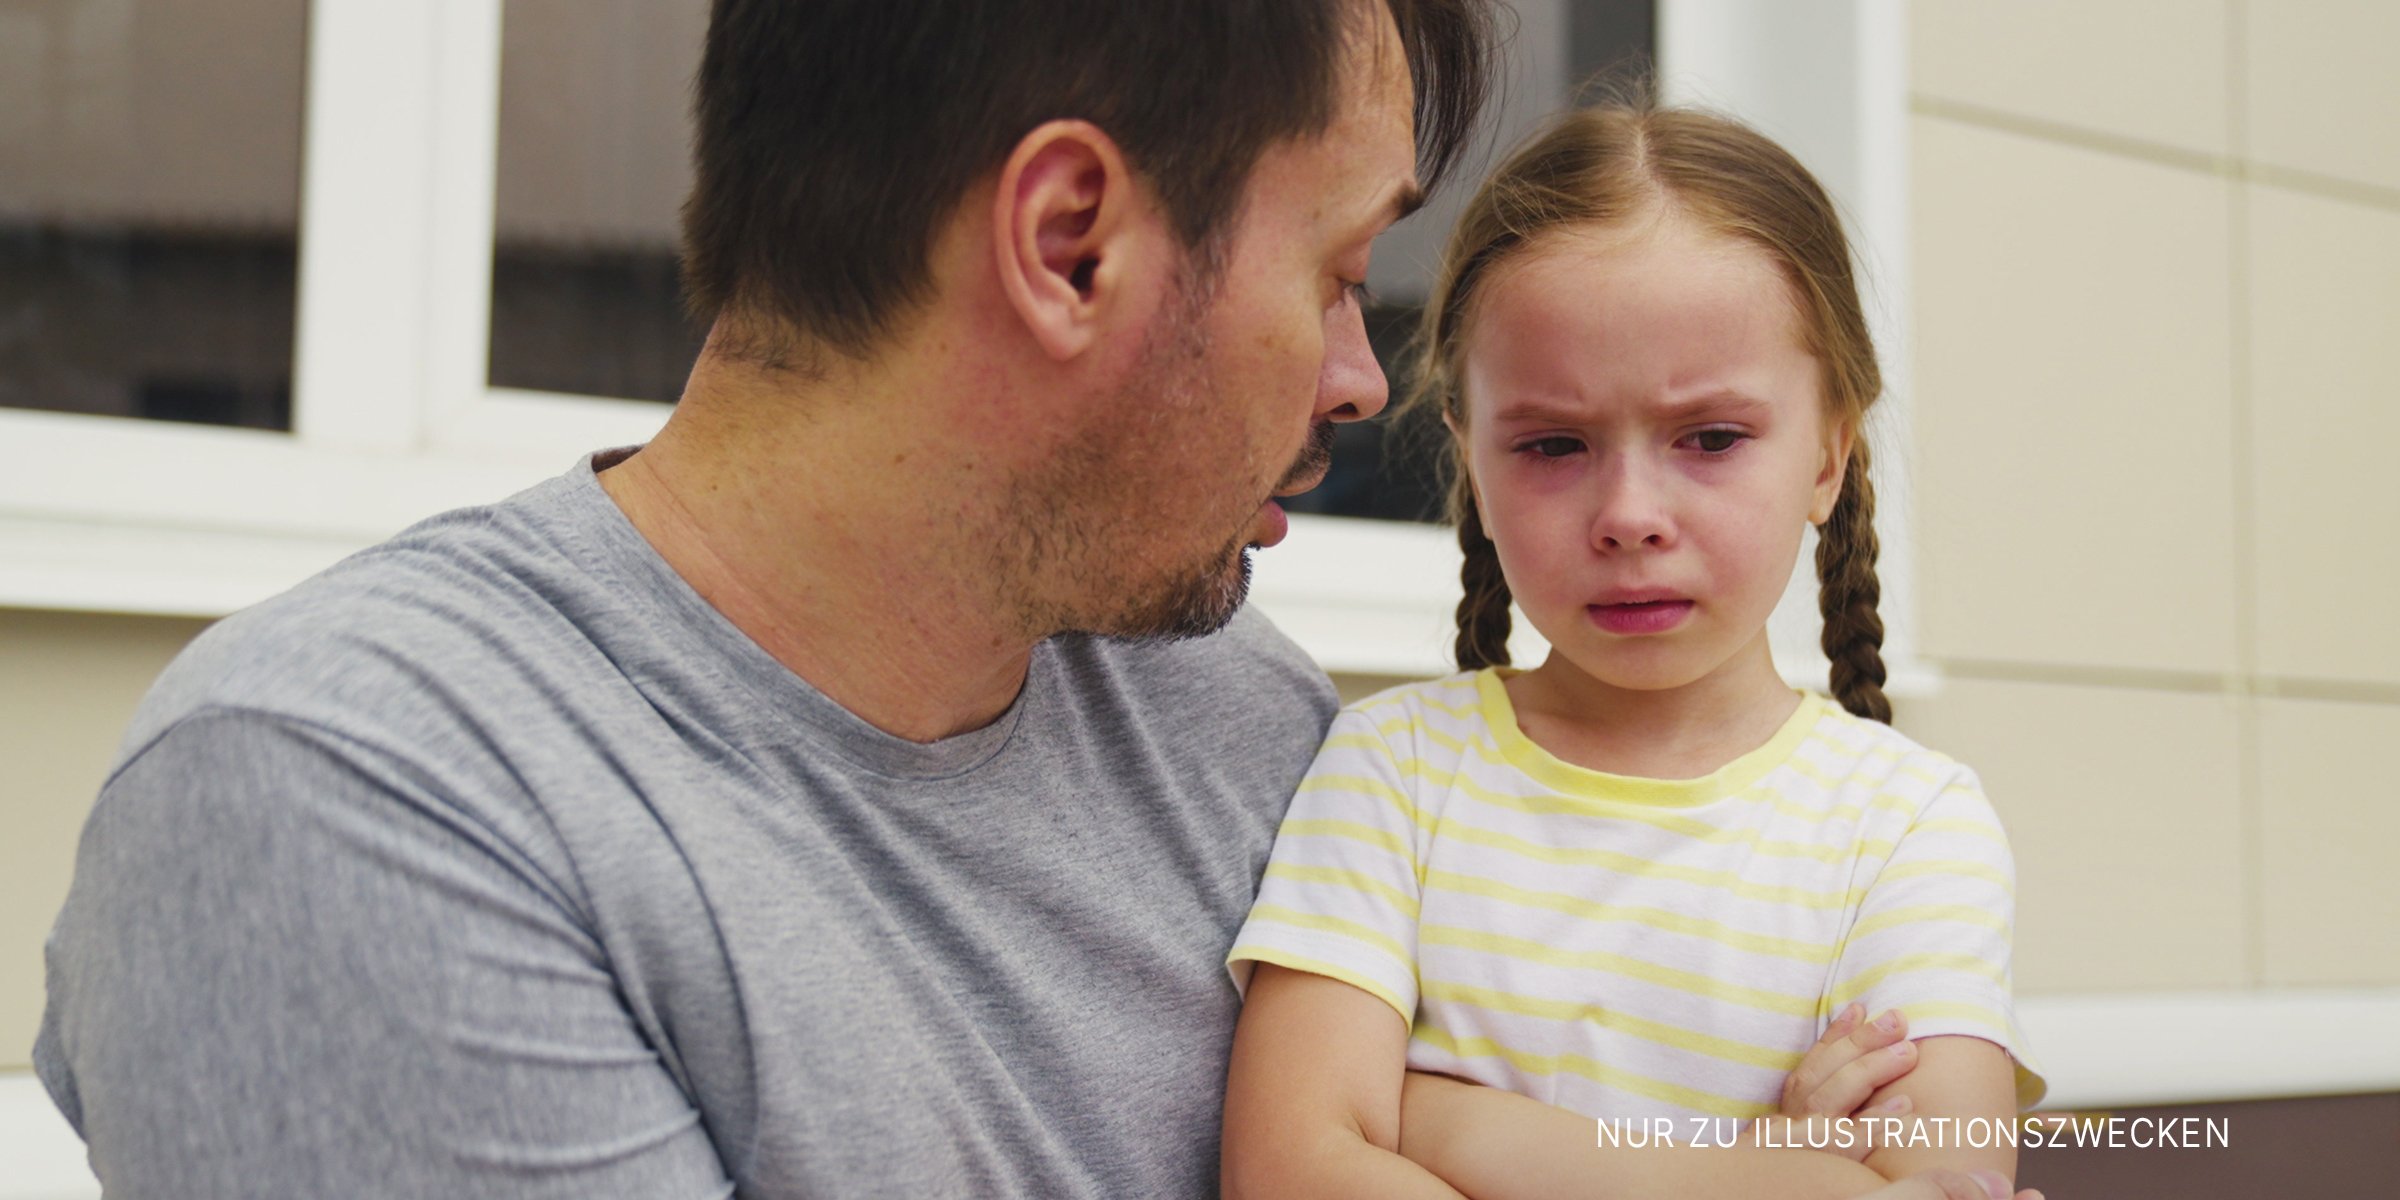 Aufgebrachtes Mädchen im Gespräch mit ihrem Vater. | Quelle: Shutterstock